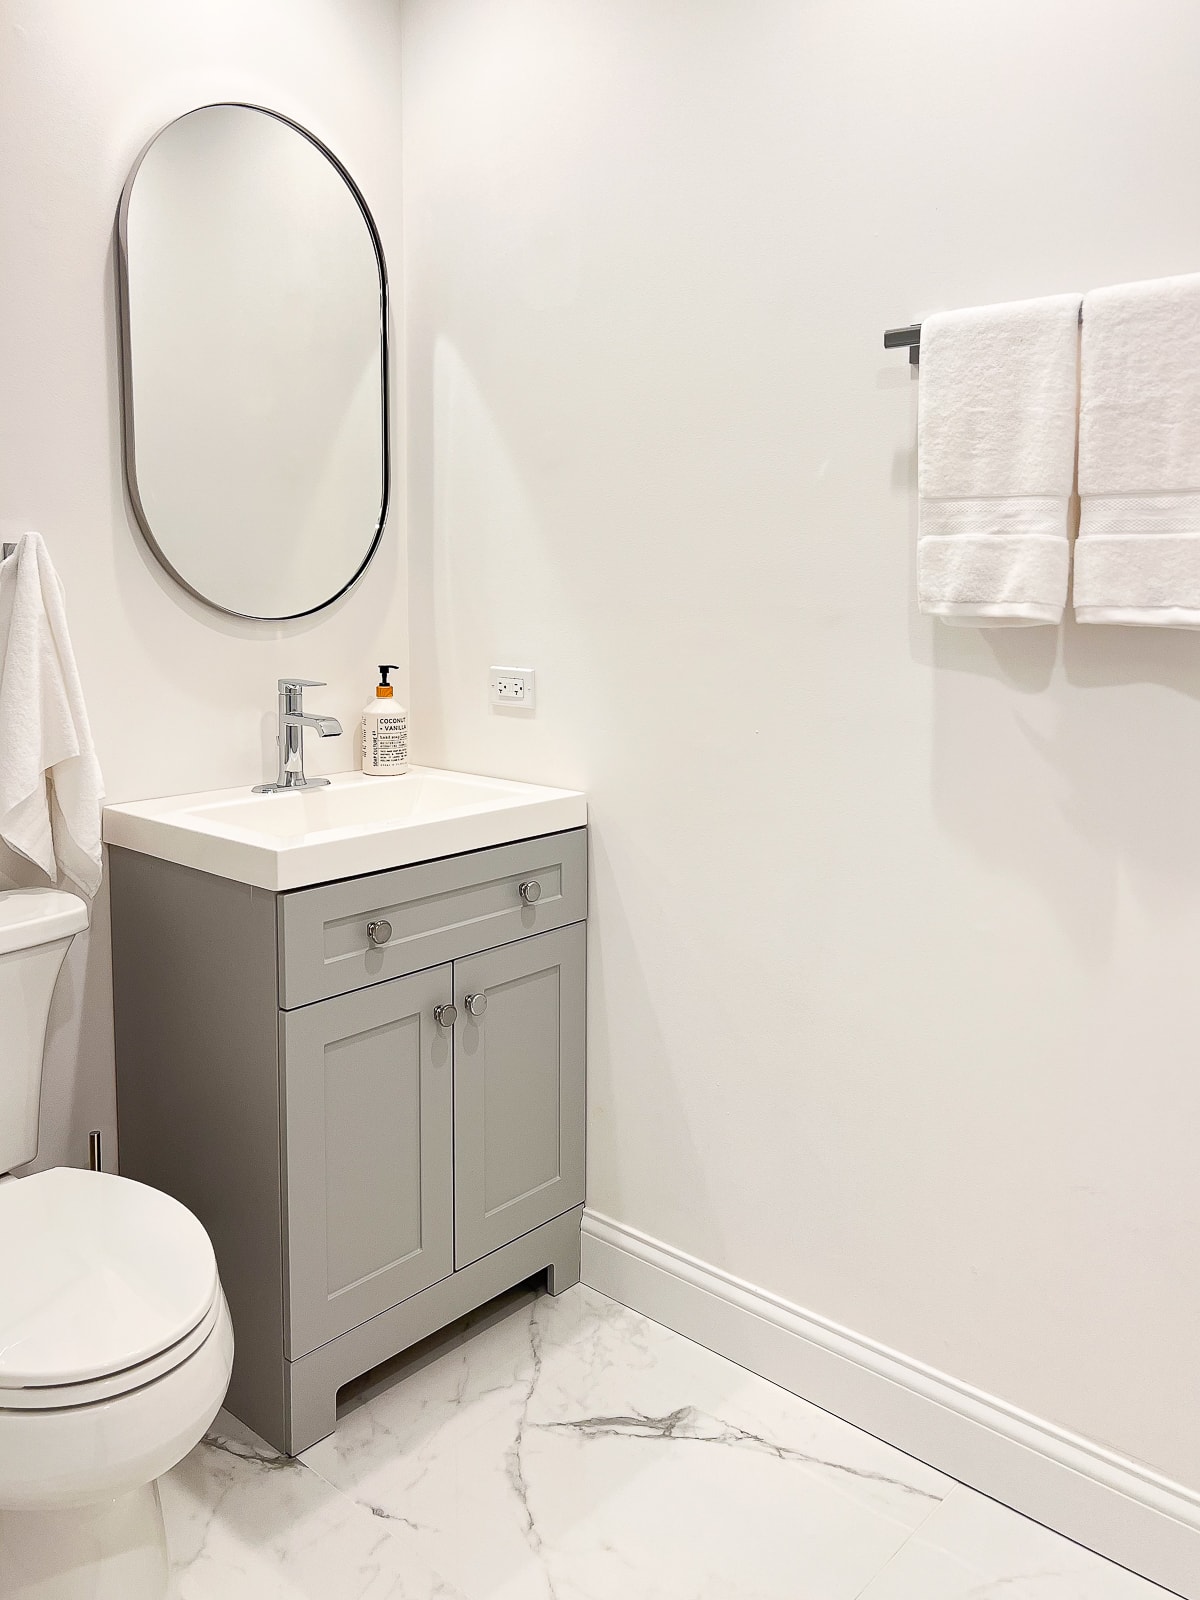 Une vasque grise et des murs blancs dans cette petite salle de bain sans fenêtre